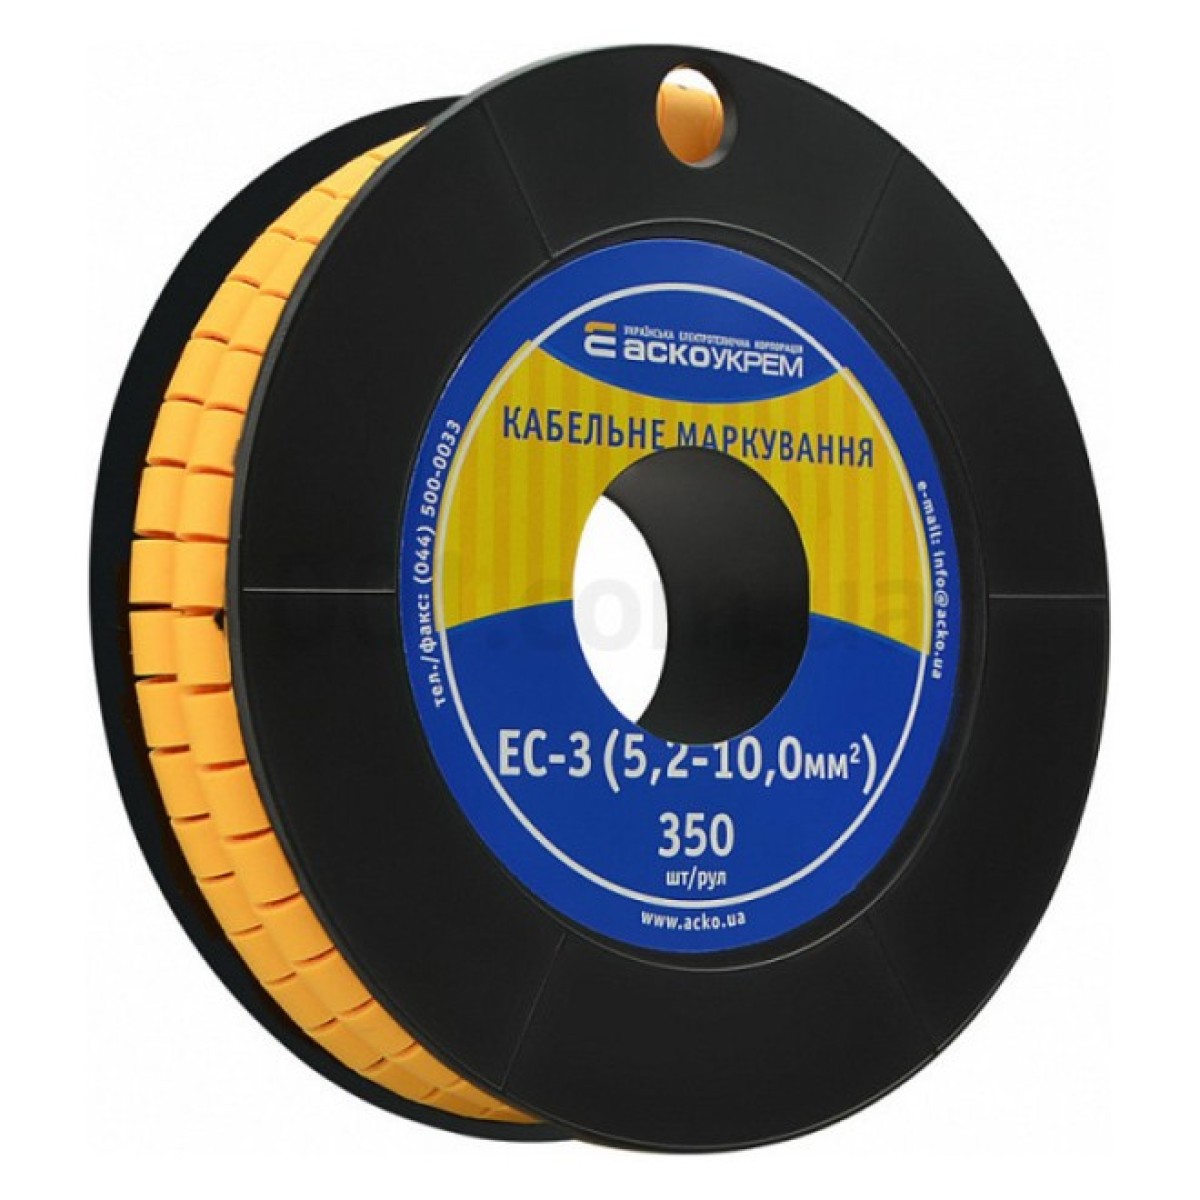 Маркировка EC-3 для кабеля 5,2-10,0 мм² (чистая) (рулон 250 шт.), АСКО-УКРЕМ 256_256.jpg